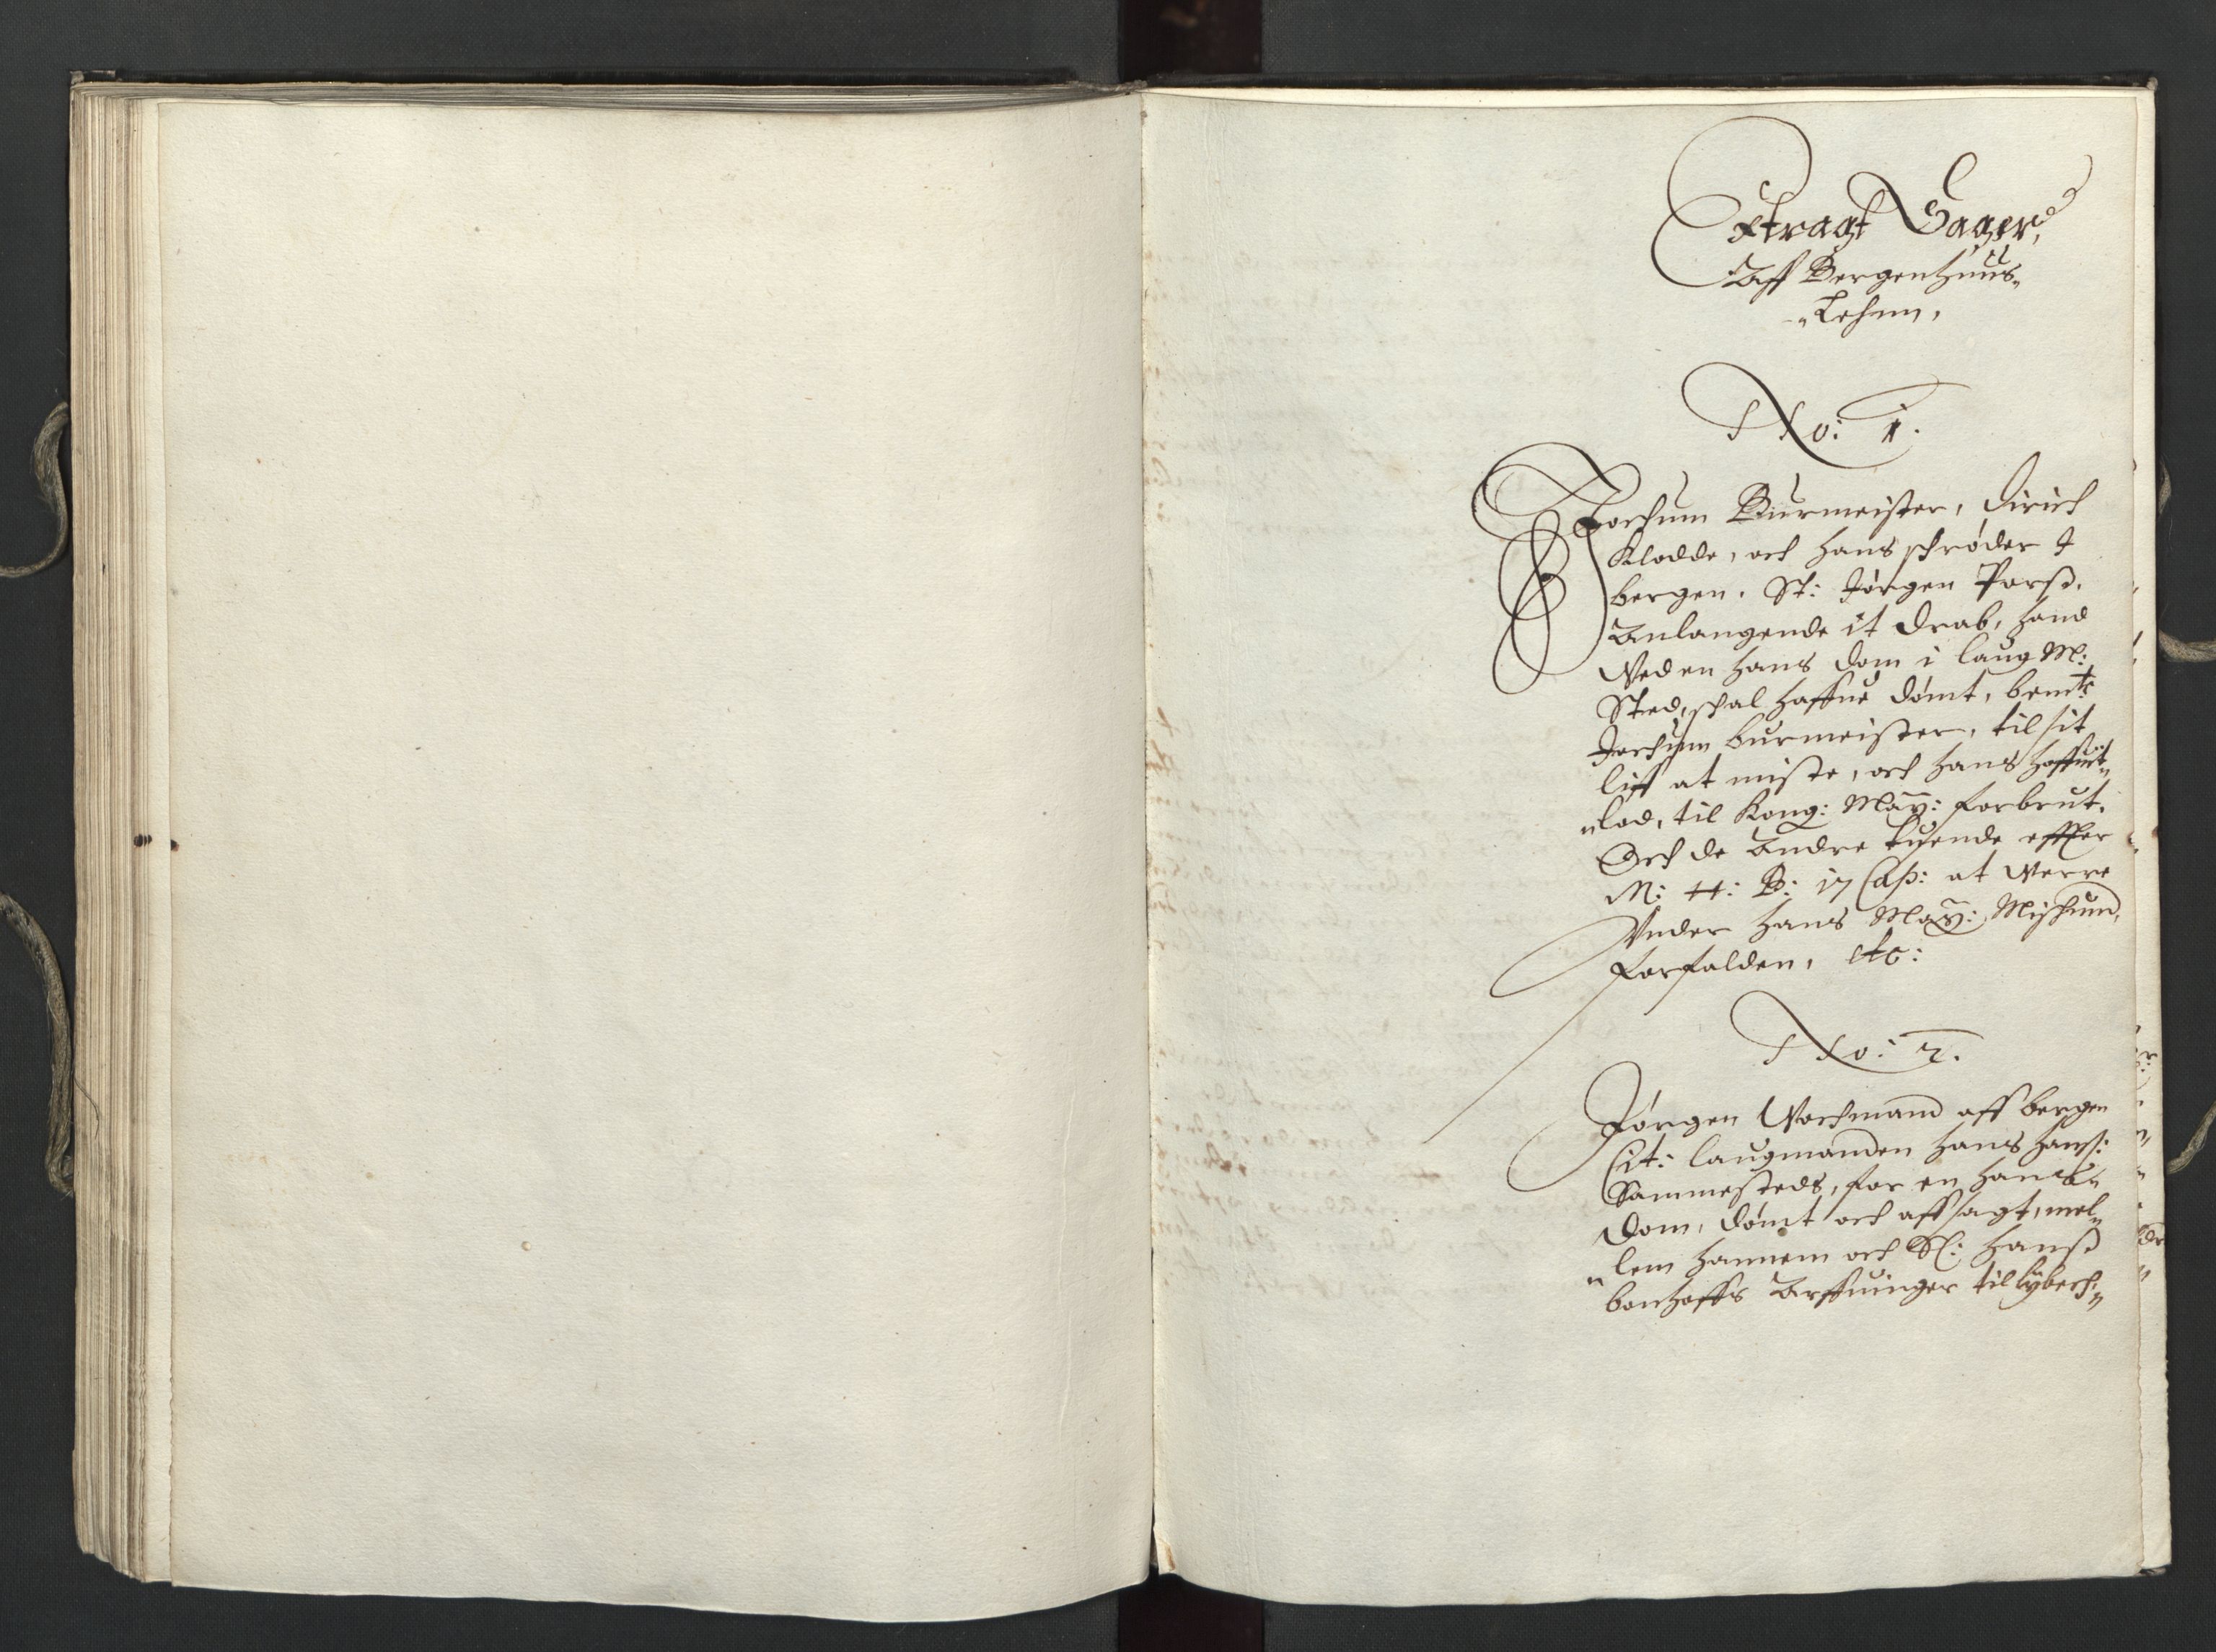 Herredagen 1539-1664  (Kongens Retterting), RA/EA-2882/A/L0024: Avsiktsbok   To stevningsbøker, 1661